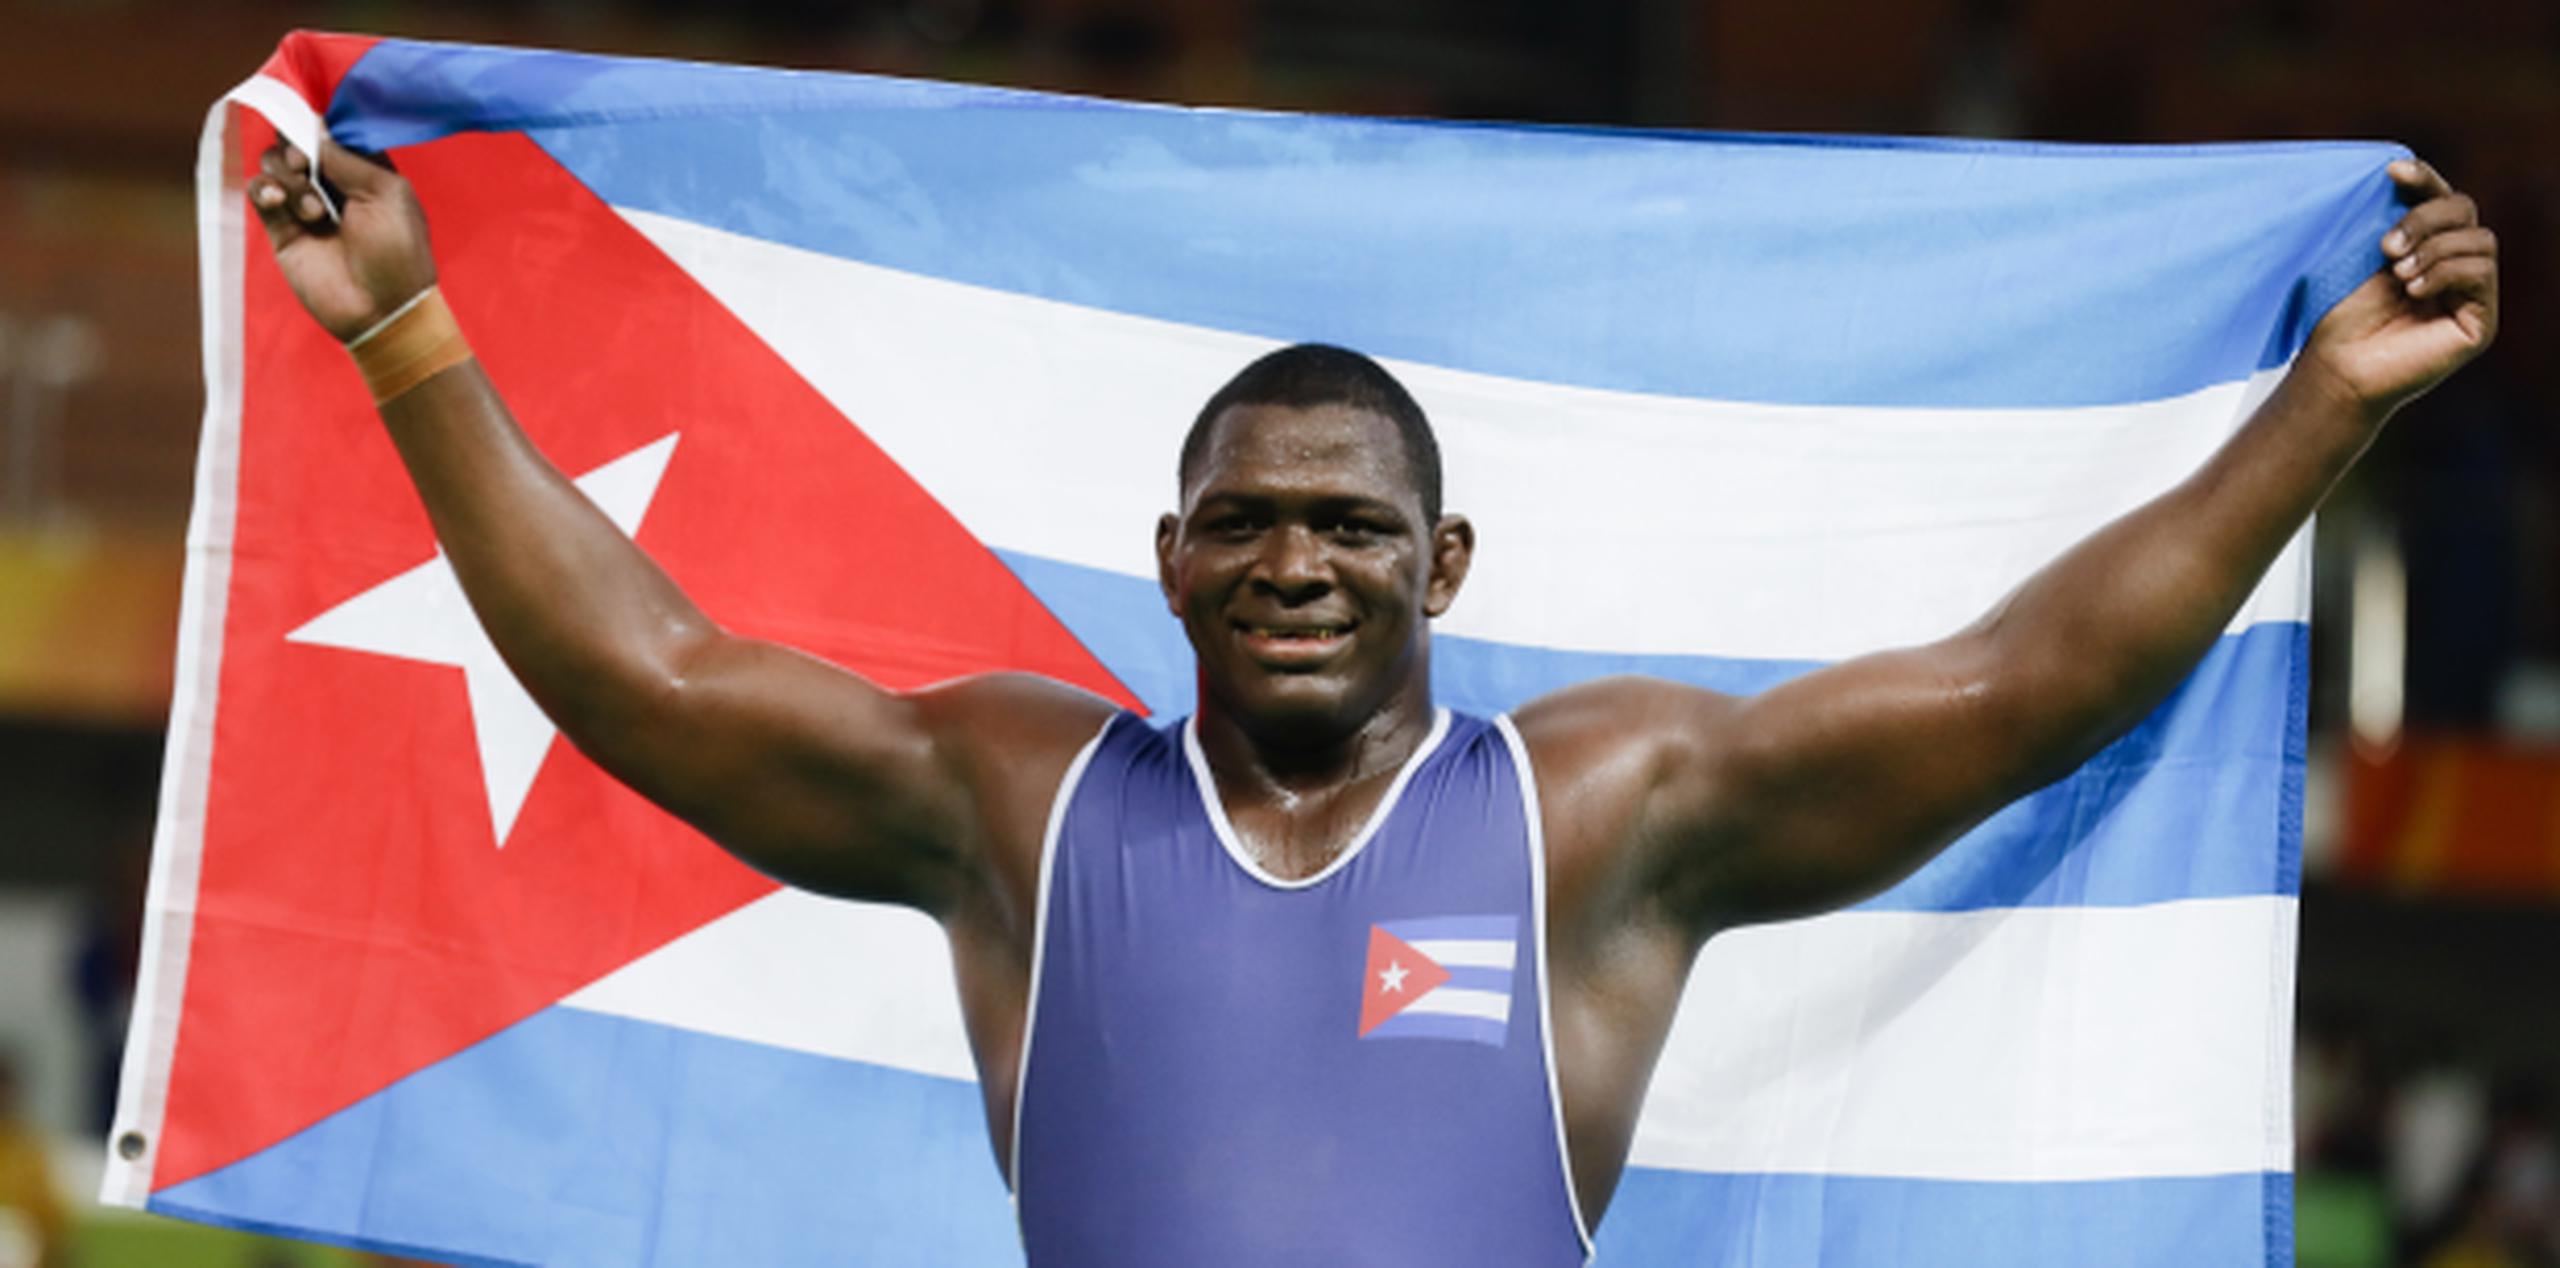 El luchador Mijain López celebra su victoria en la final de la categoría de 130 kg de la lucha grecorromana en los juegos de Río 2016. (AP/Markus Schreiber)
